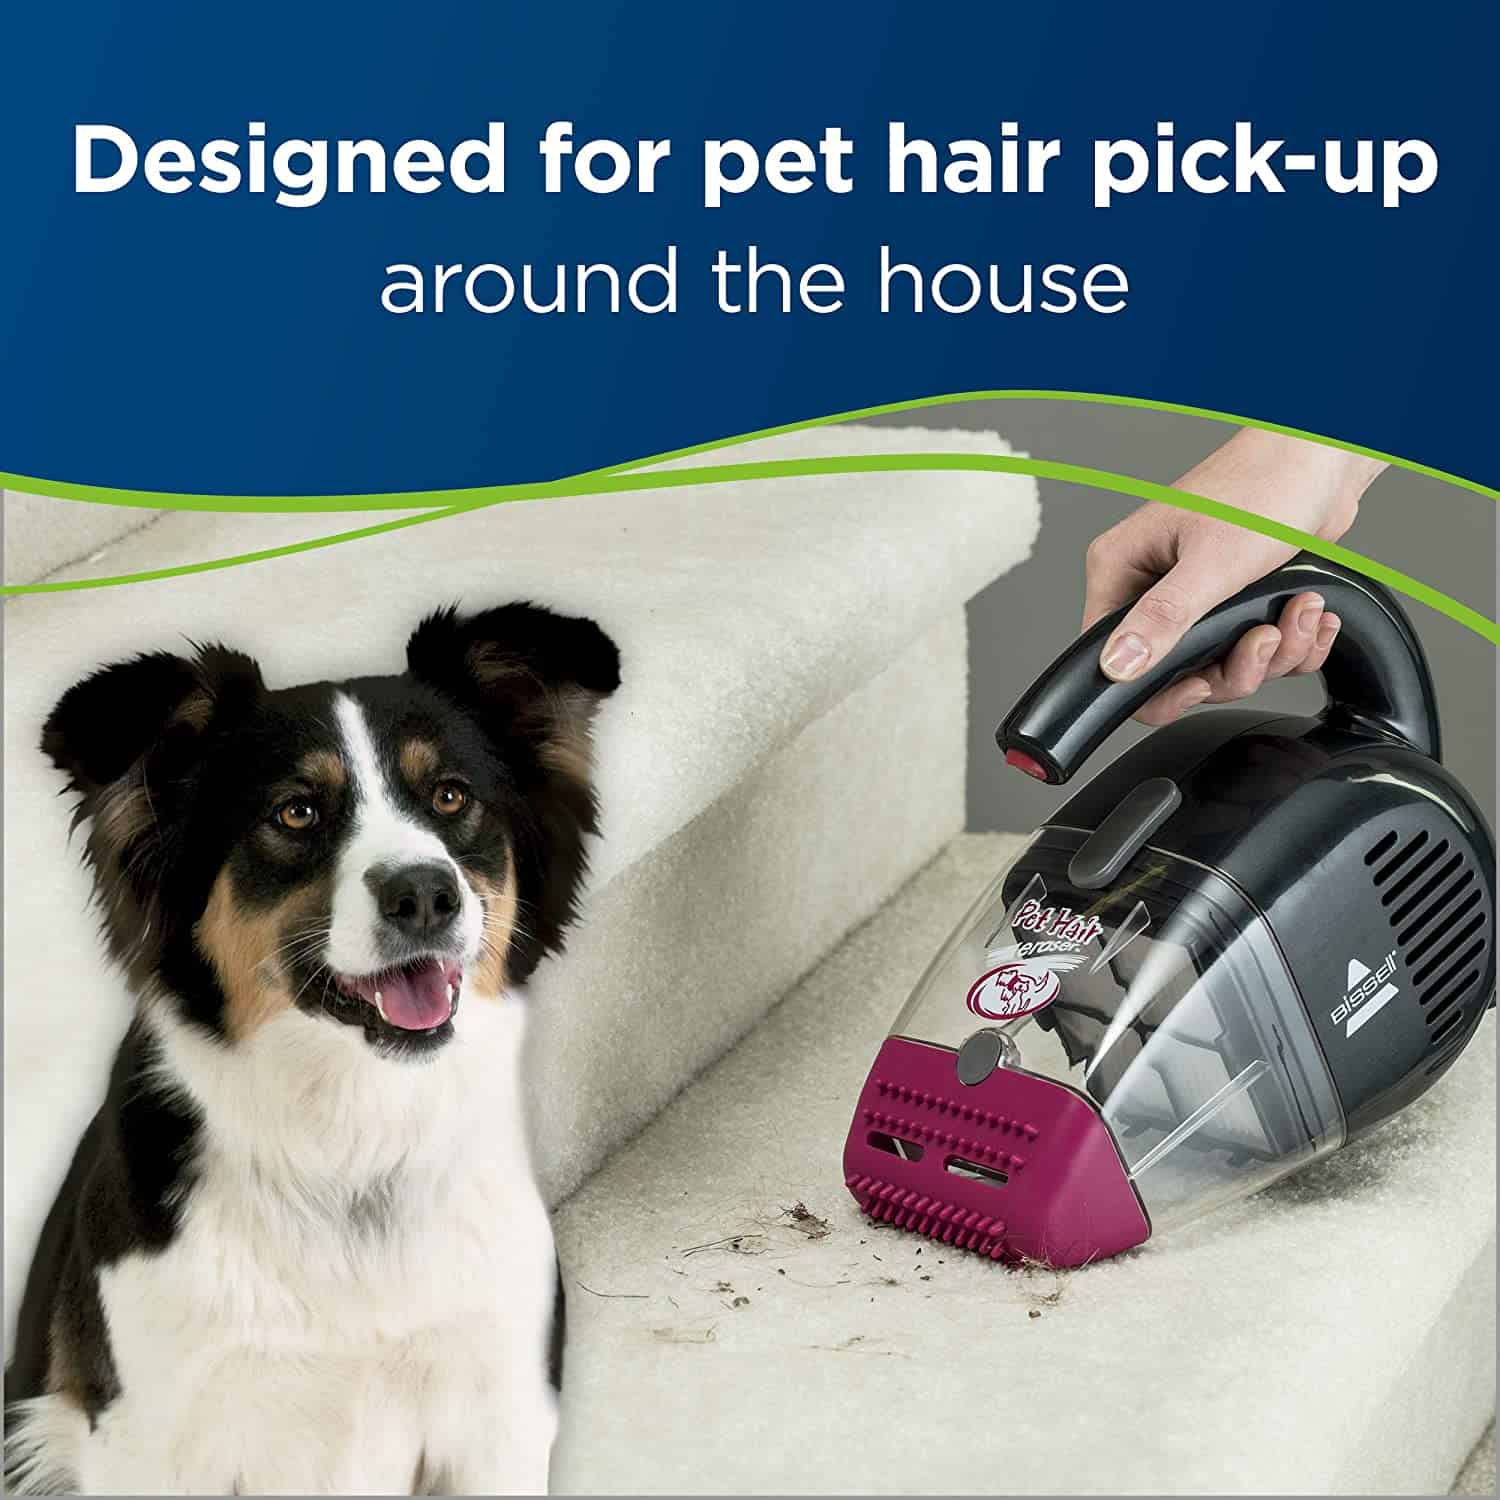 Best Pet Hair Handheld Vacuum: Bissell Pet Hair Eraser 33A1